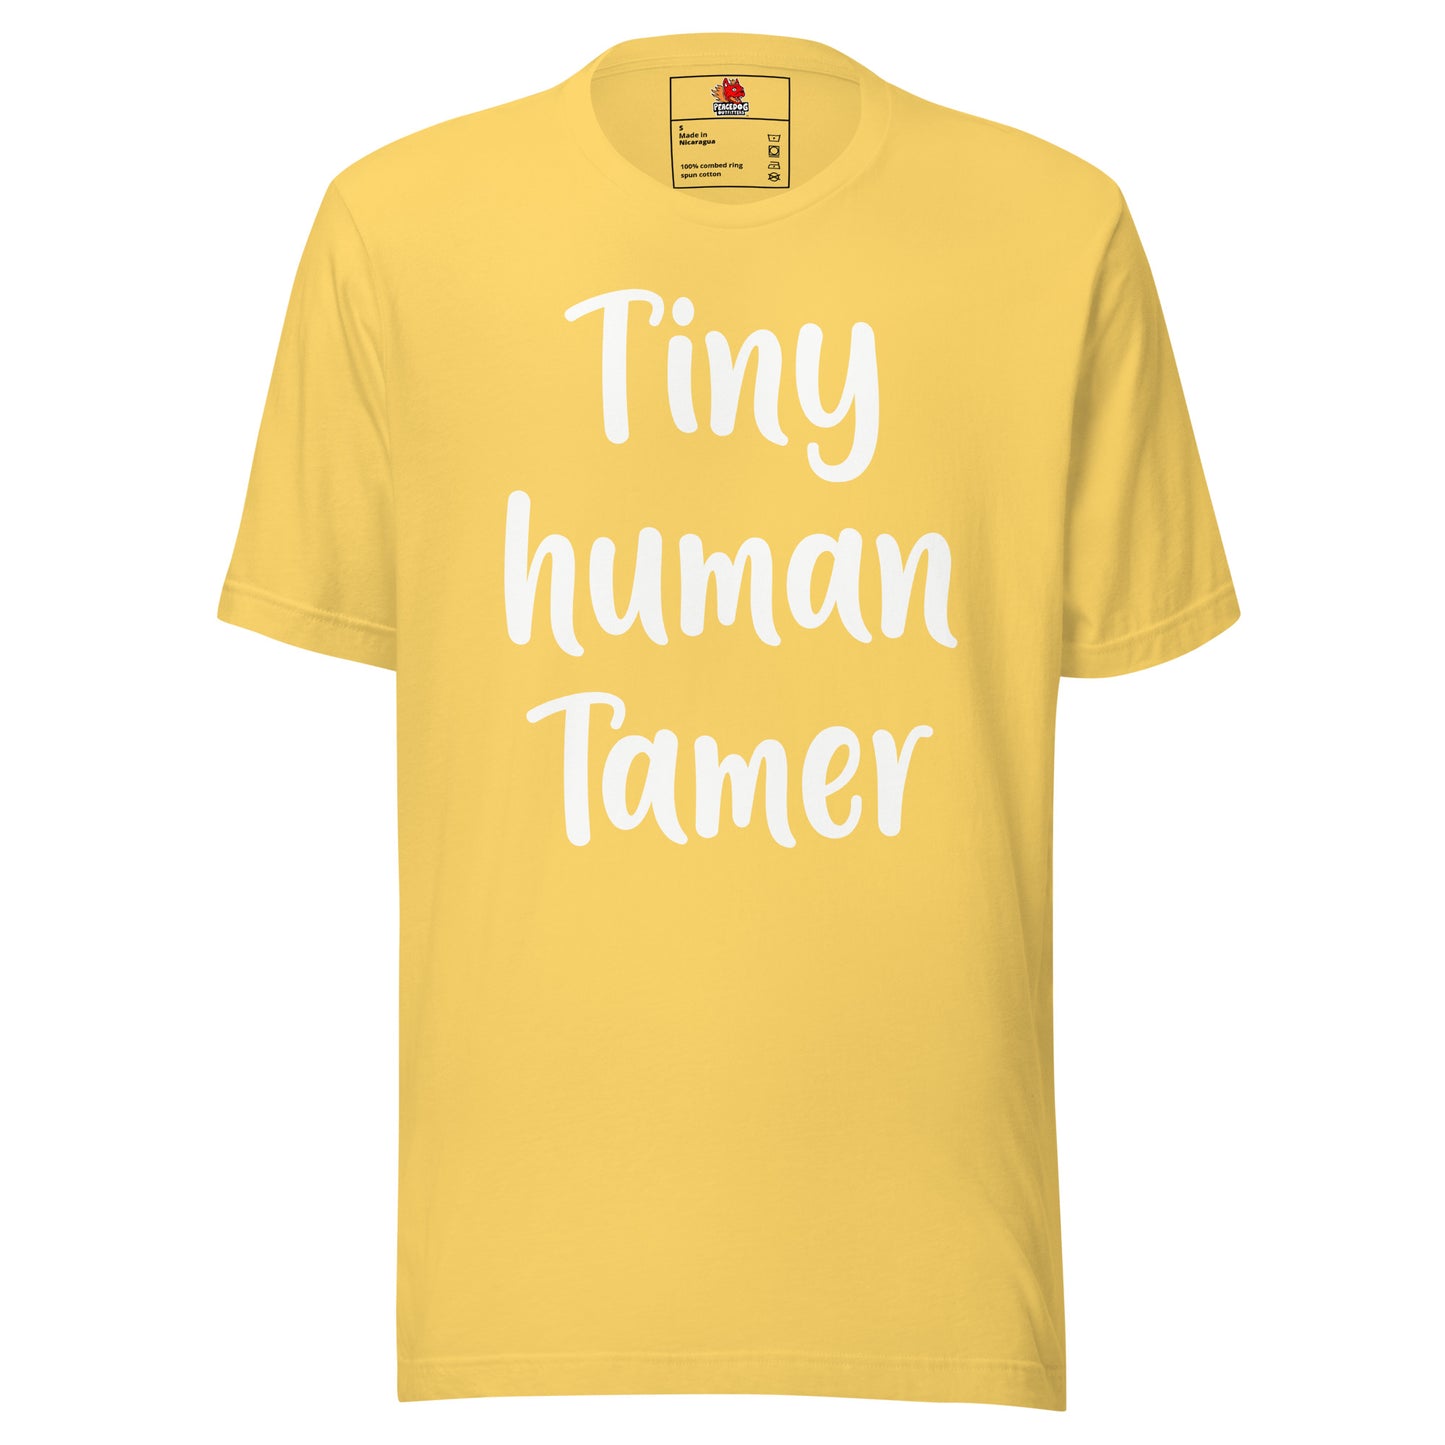 Tiny Human Tamer T-shirt